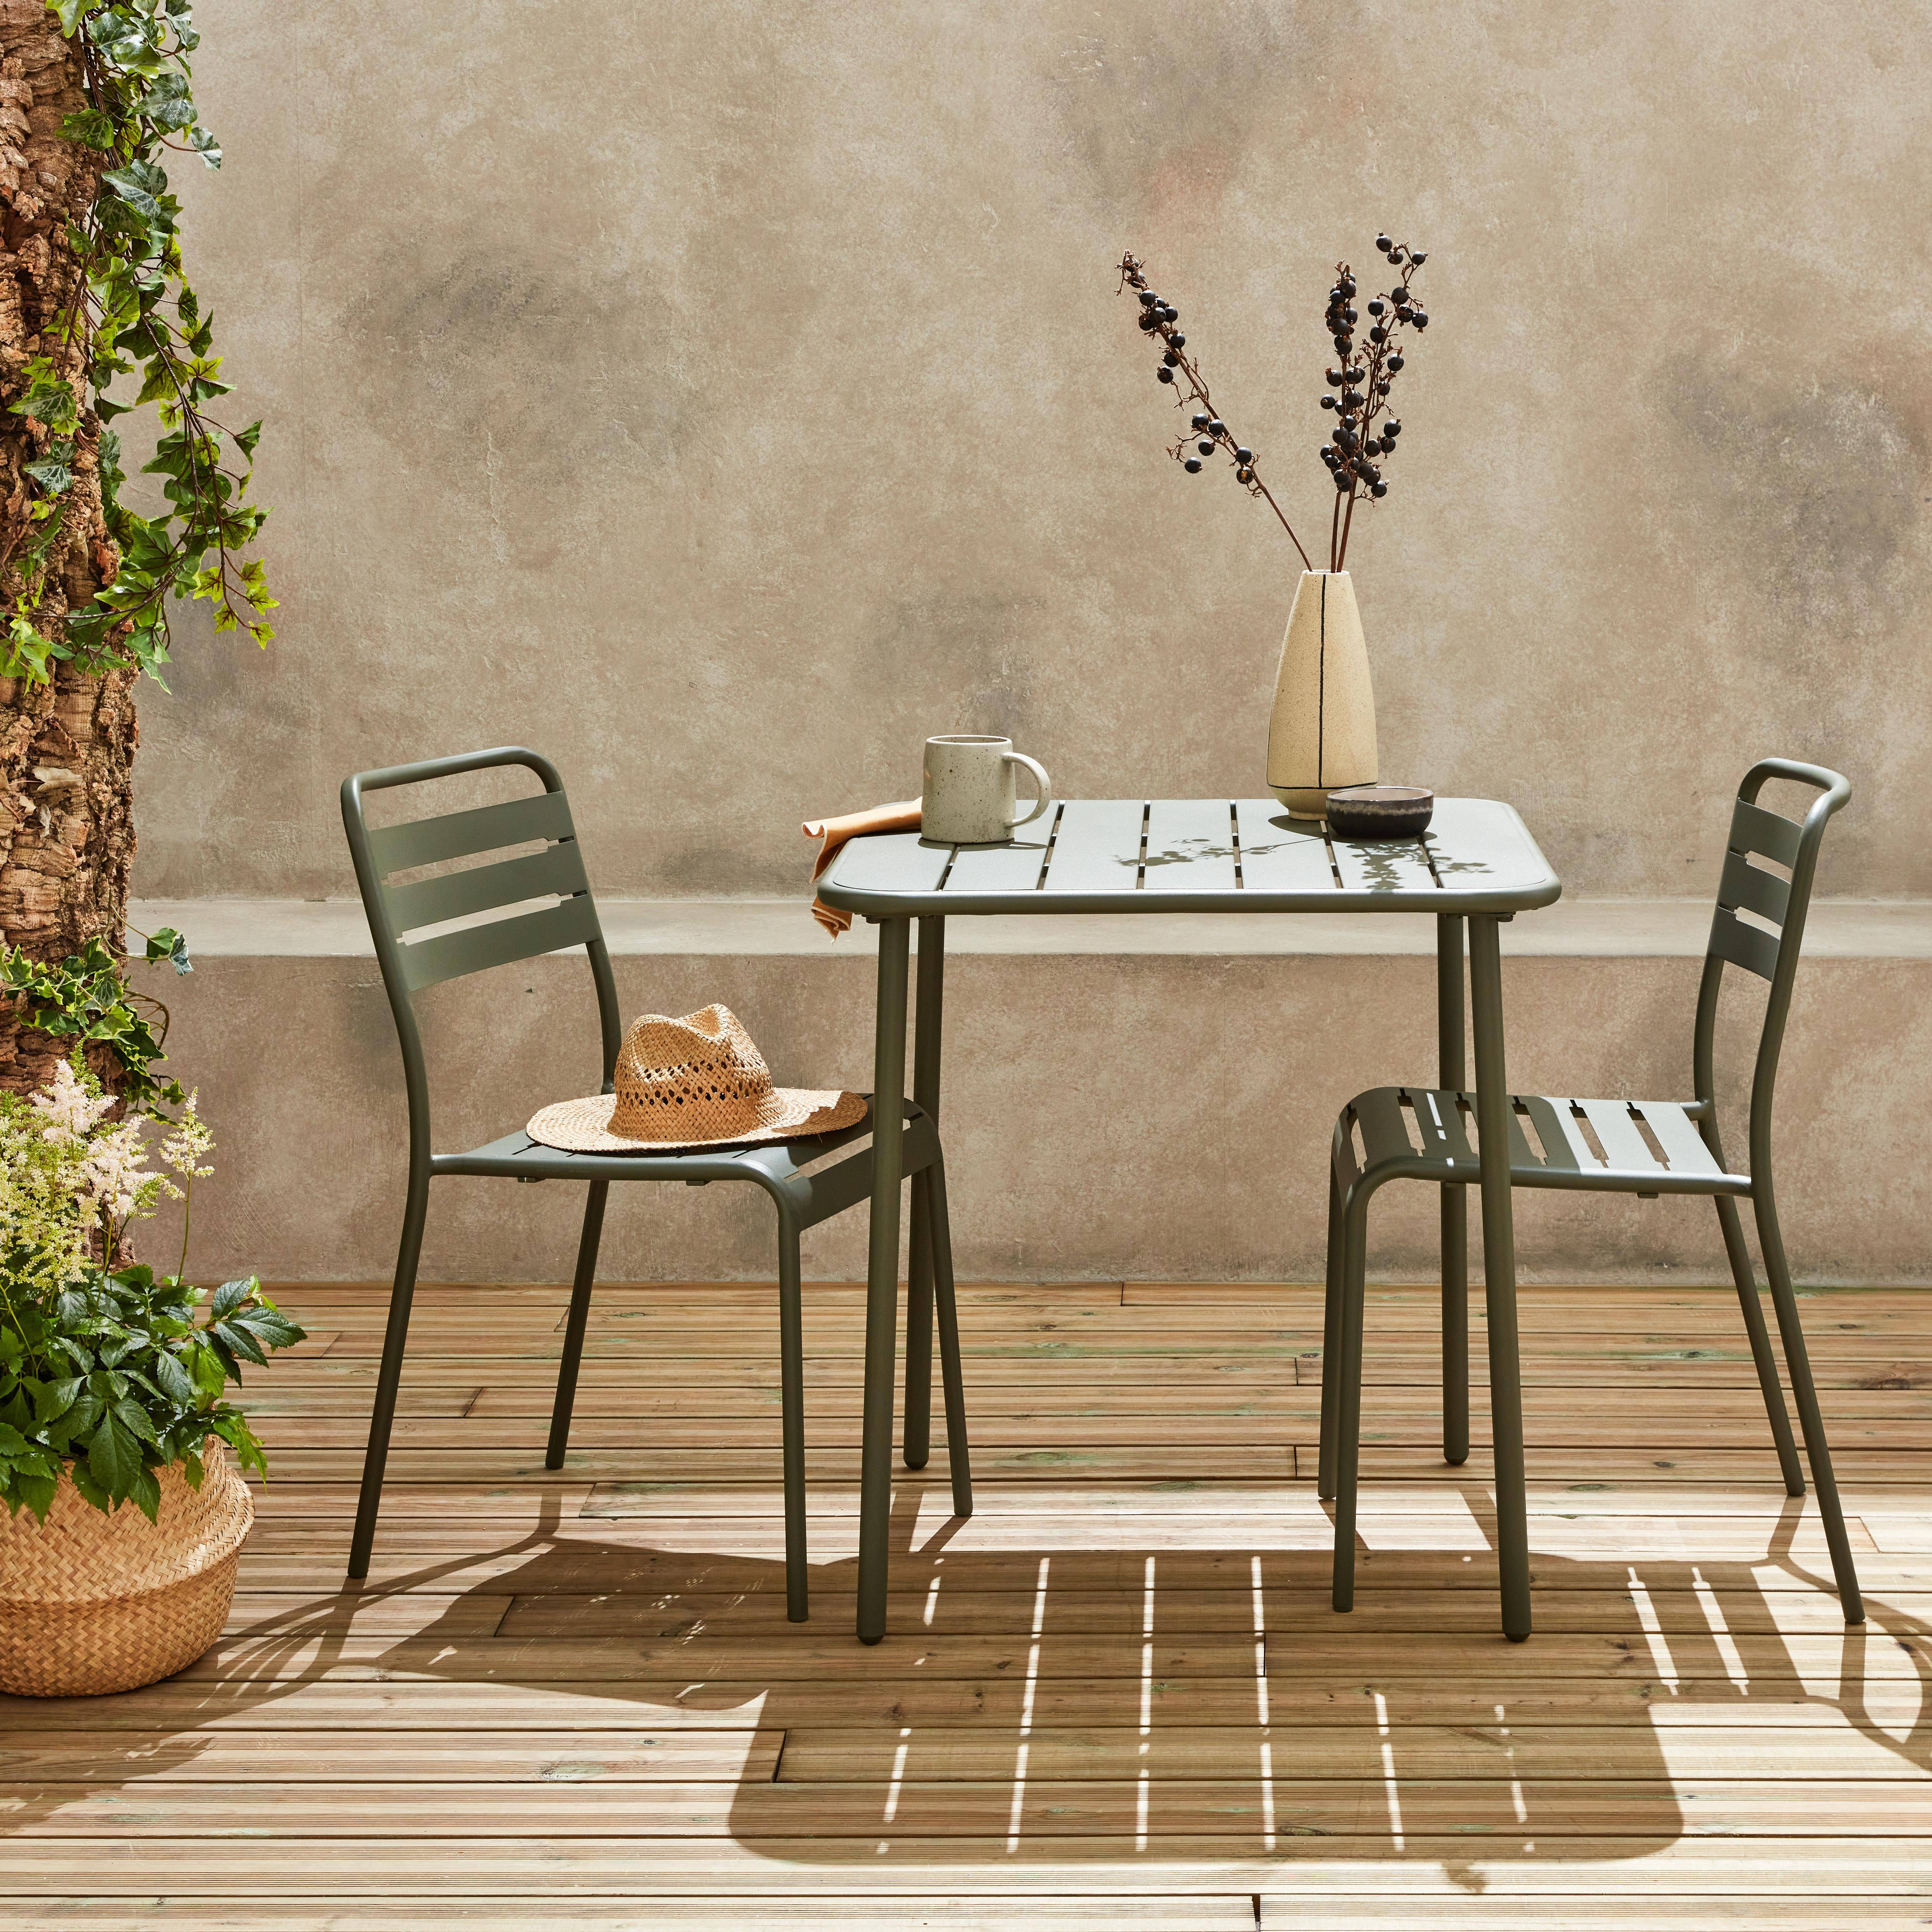 Metall-Gartentisch mit 2 Stühlen, 2 Personen, Amelia Savanne 70 x 70 cm Photo1